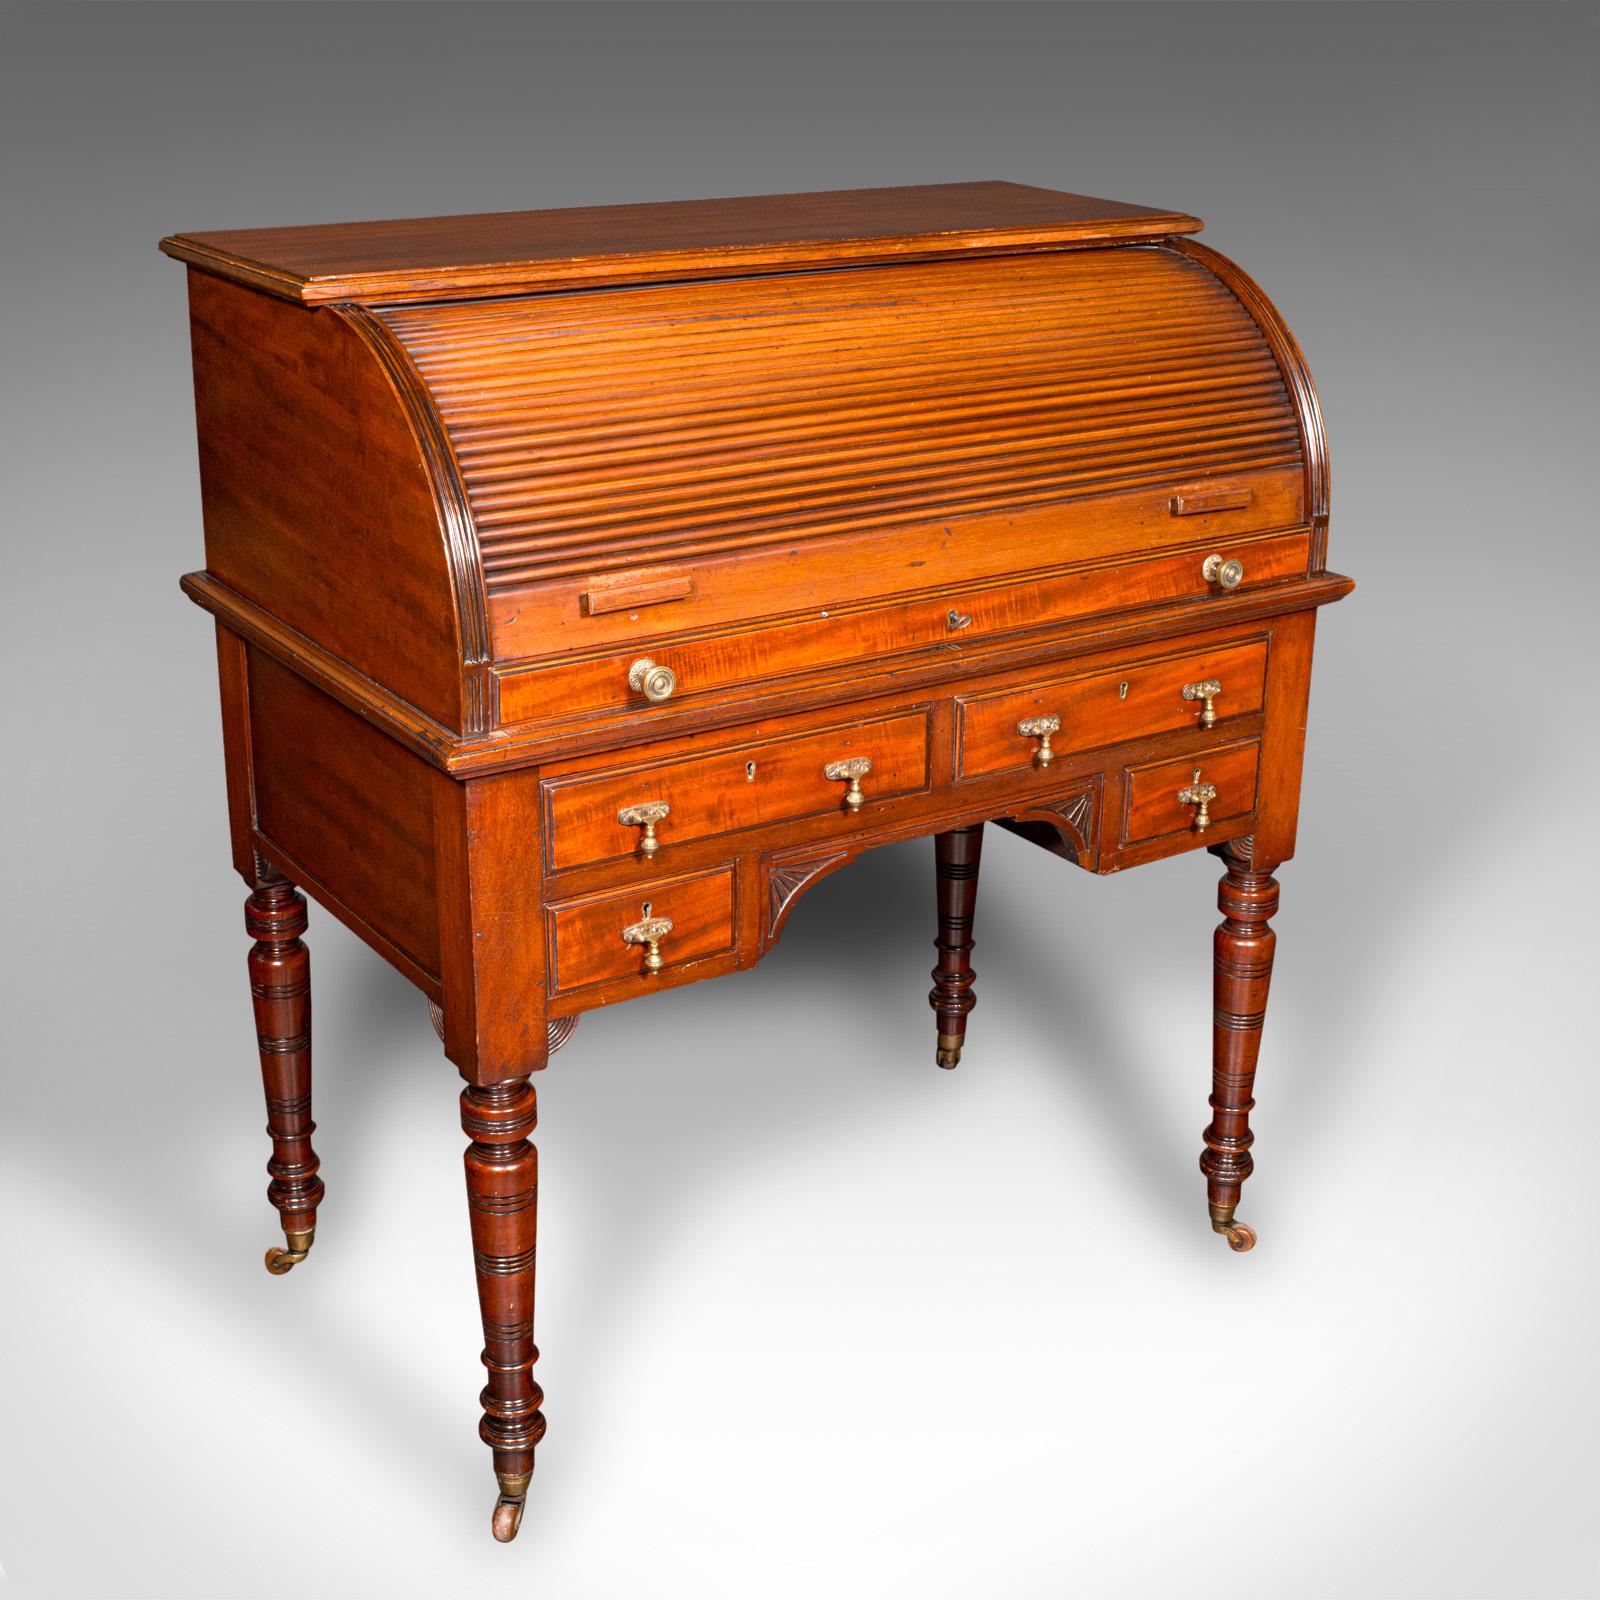 Dies ist ein antiker Roll-Top-Schreibtisch. Eine englische Kommode aus Mahagoni und Leder im Stil der Ästhetischen Periode aus der späten viktorianischen Ära, um 1880.

Wunderschön ausgestatteter Schreibtisch, perfekt für den Salon
Zeigt eine